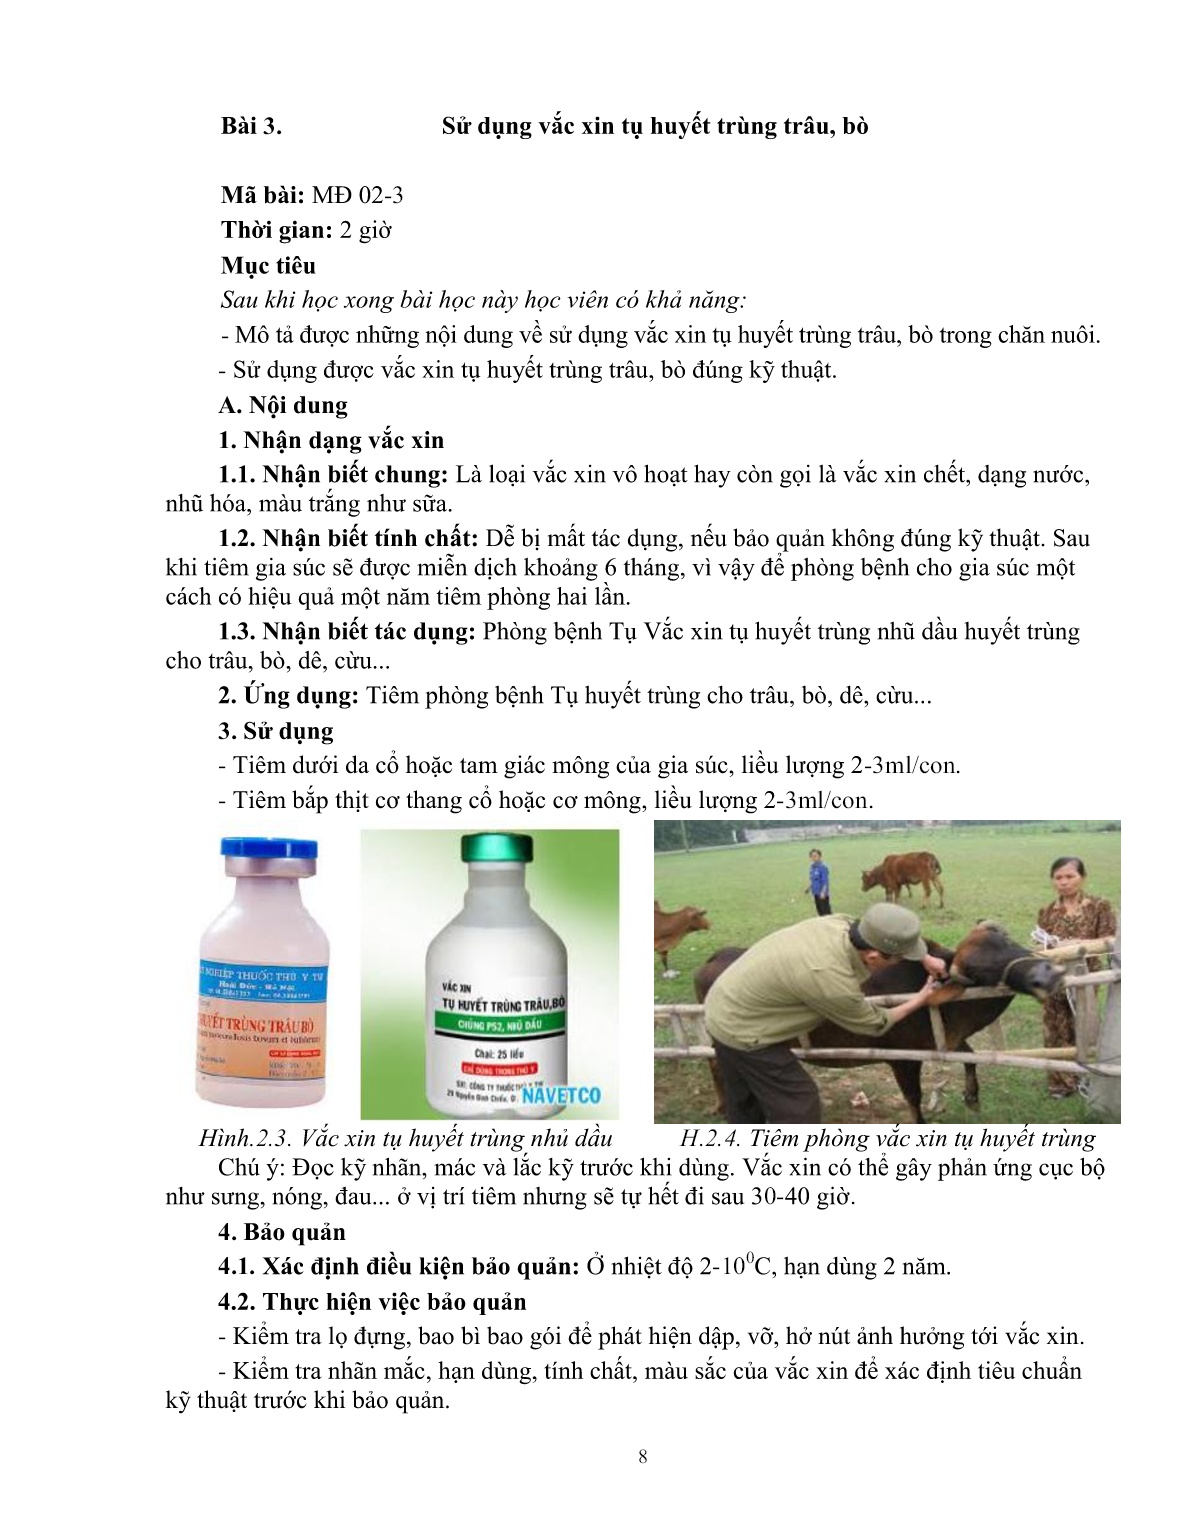 Giáo trình mô đun Xác định vắc xin phòng bệnh (Trình độ: Đào tạo dưới 3 tháng) trang 9